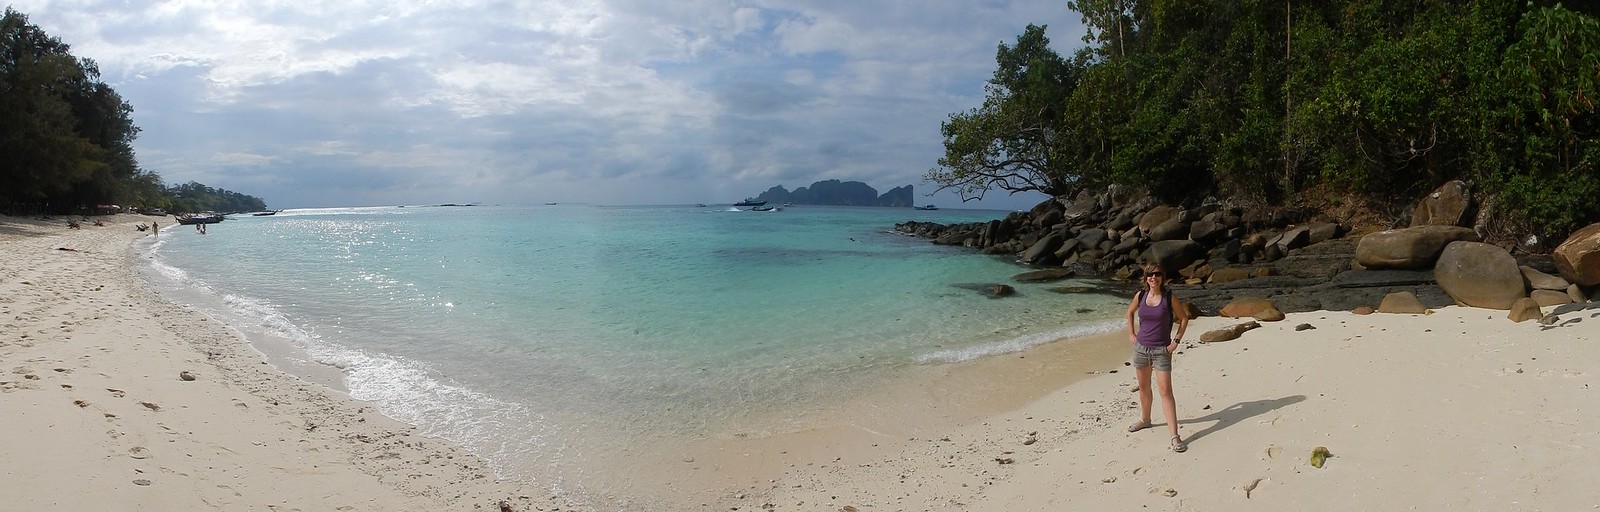 TAILANDIA POR LIBRE: TEMPLOS, ISLAS Y PLAYAS - Blogs de Tailandia - Rumbo a Ao Nang: navegando entre gigantes de roca (27)